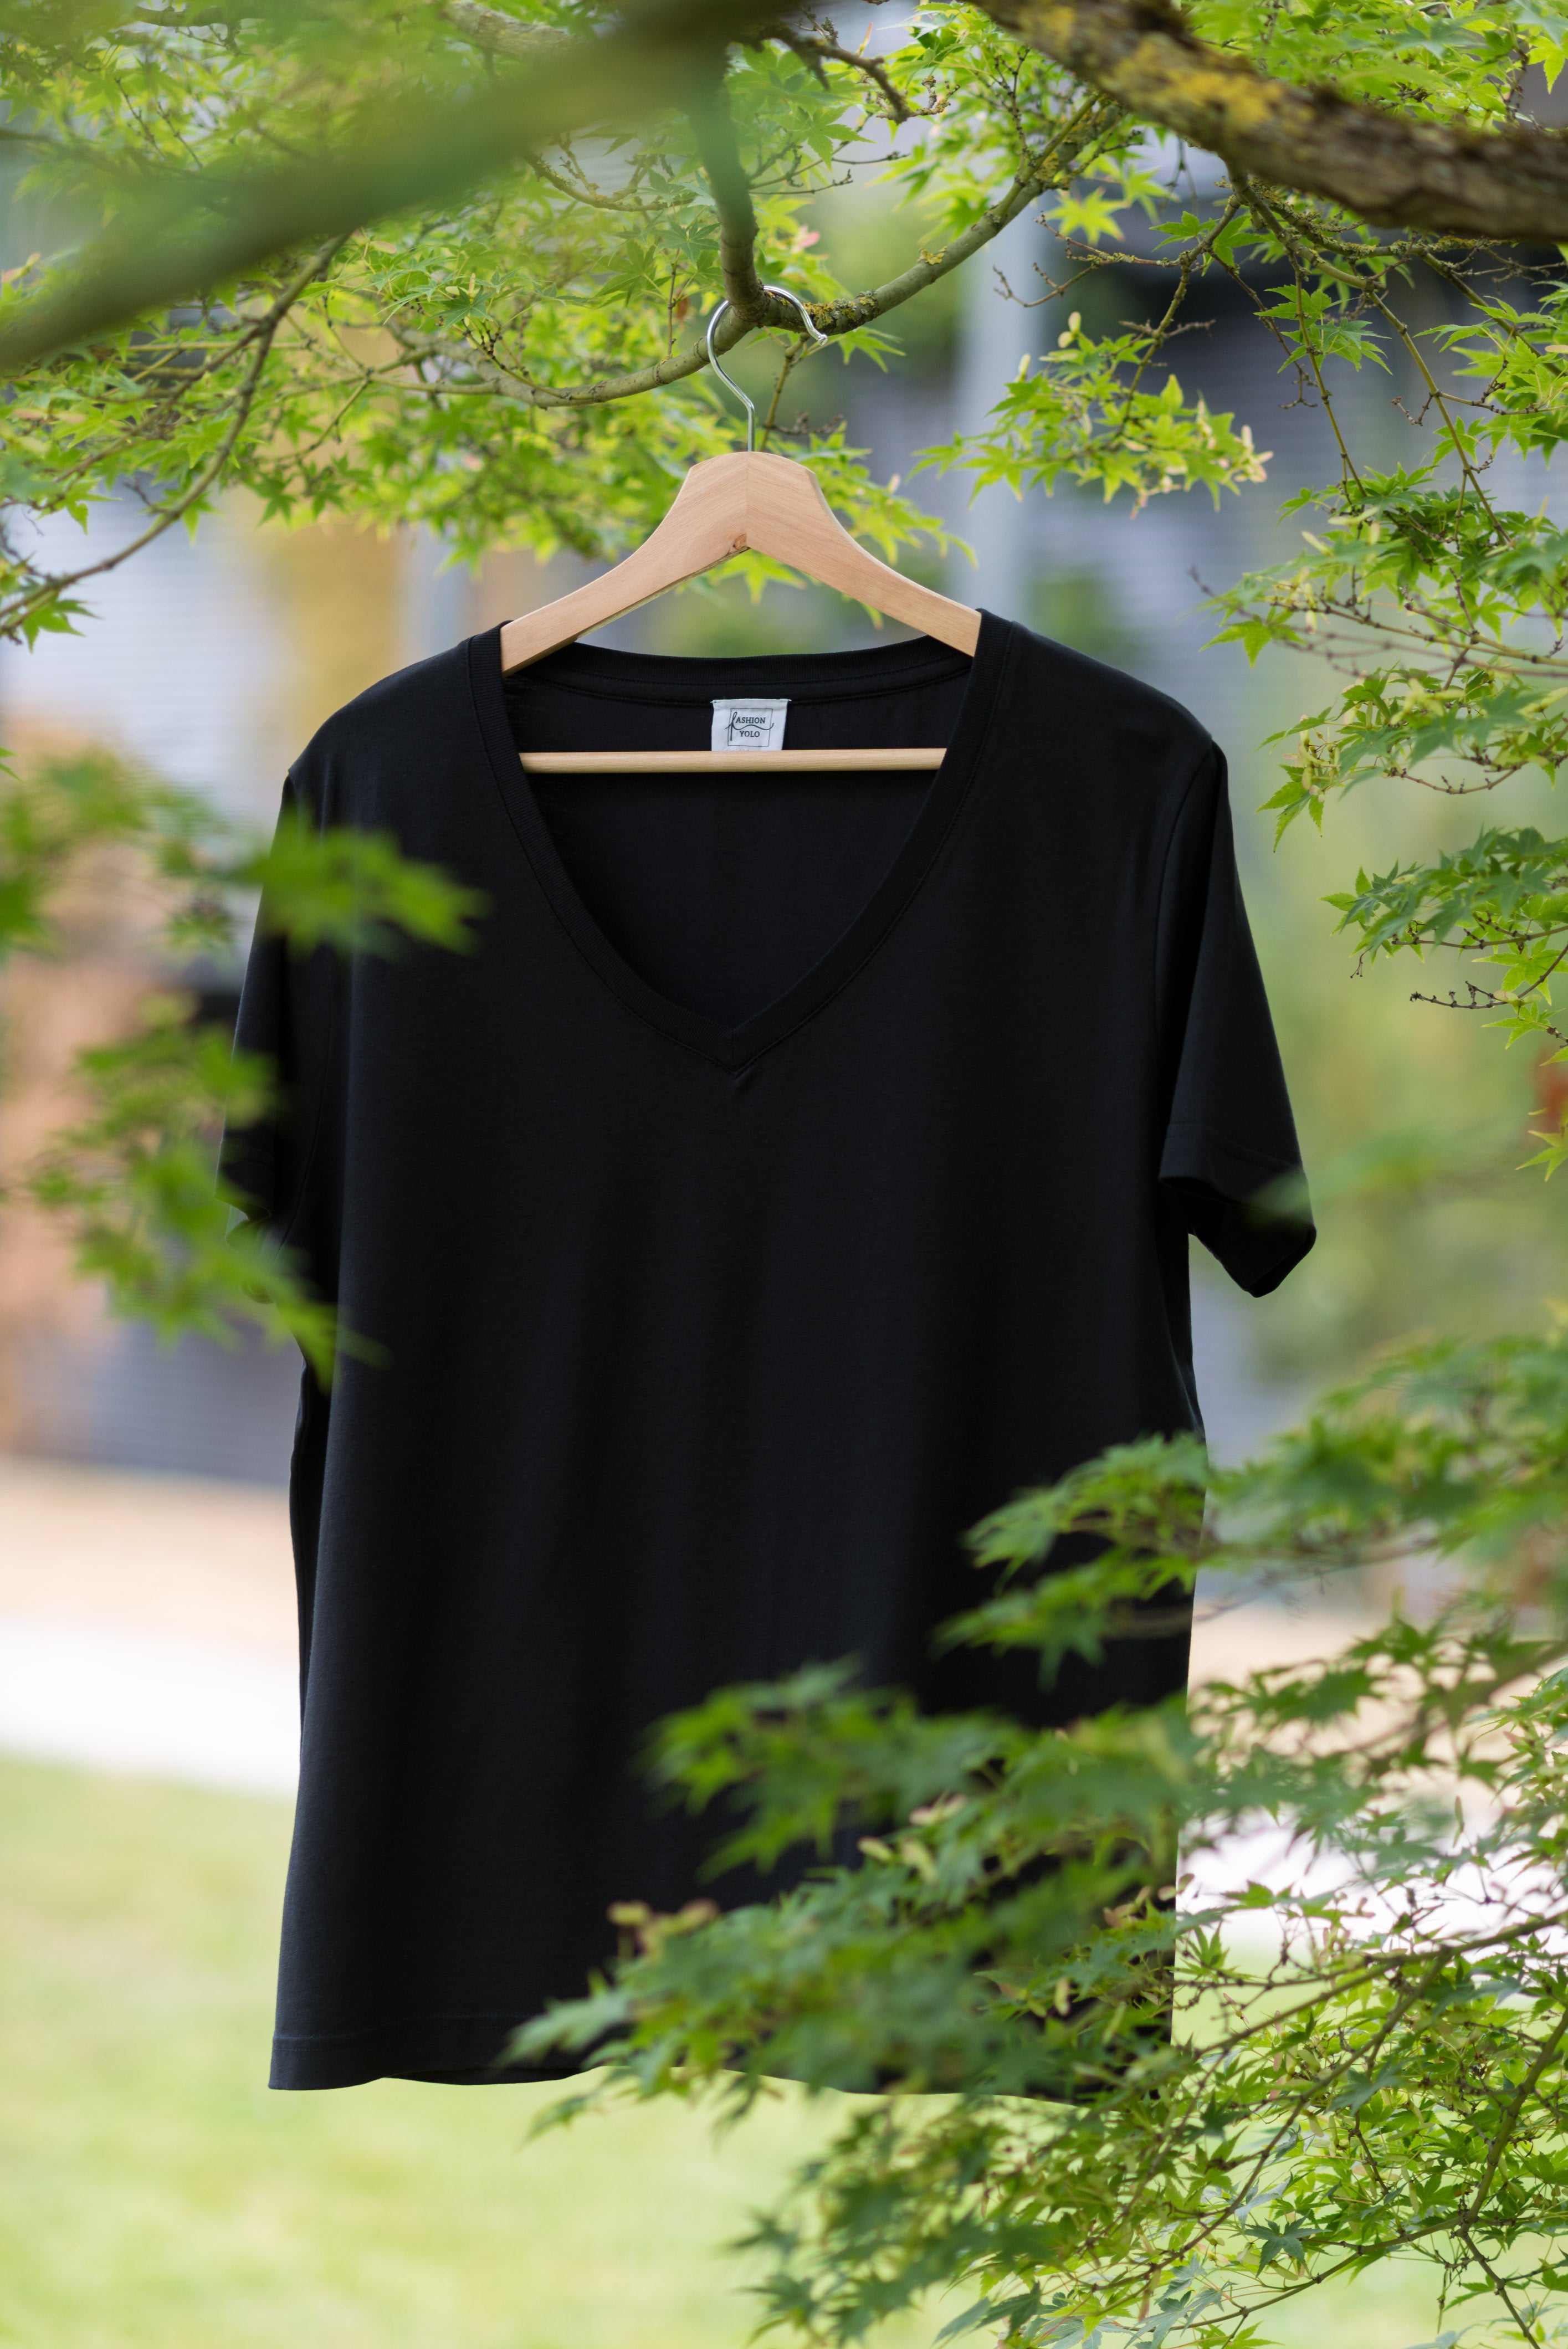 schwarzes lyocell t-shirt rundhals auf einem bügel am baum